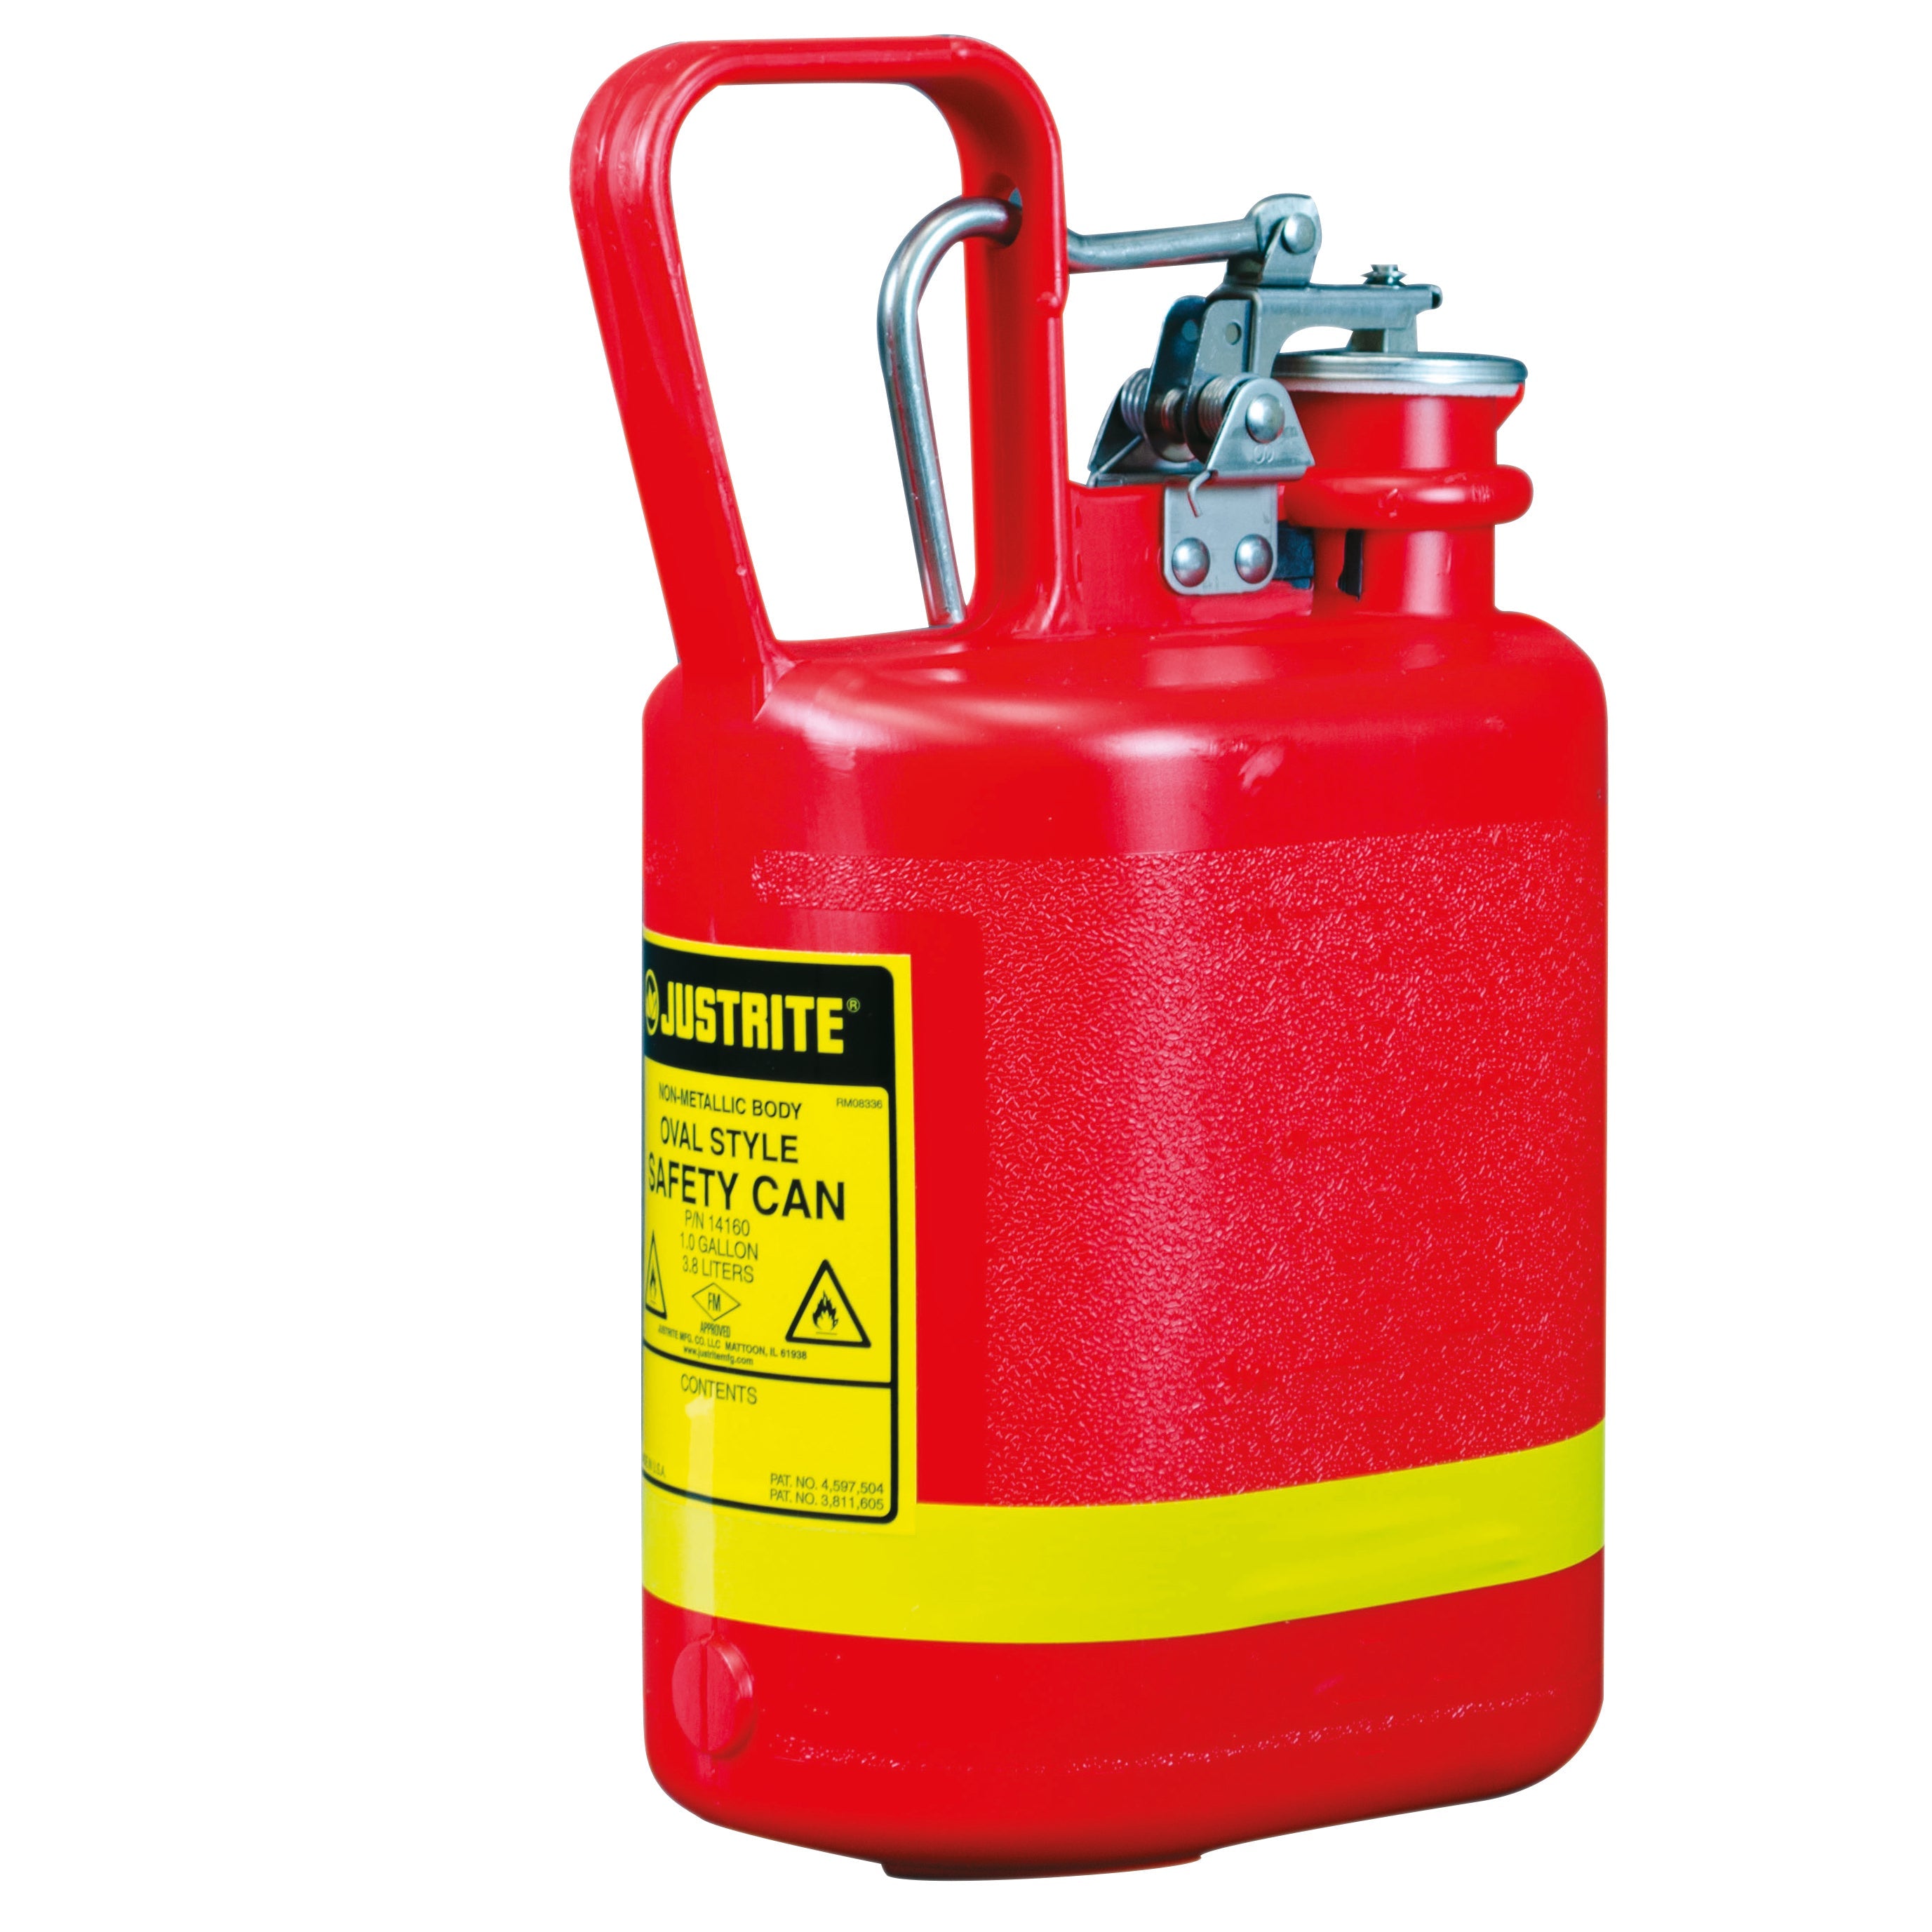 Récipient de sécurité polyéthylène rouge, contenu: 4 litres, polyéthylène